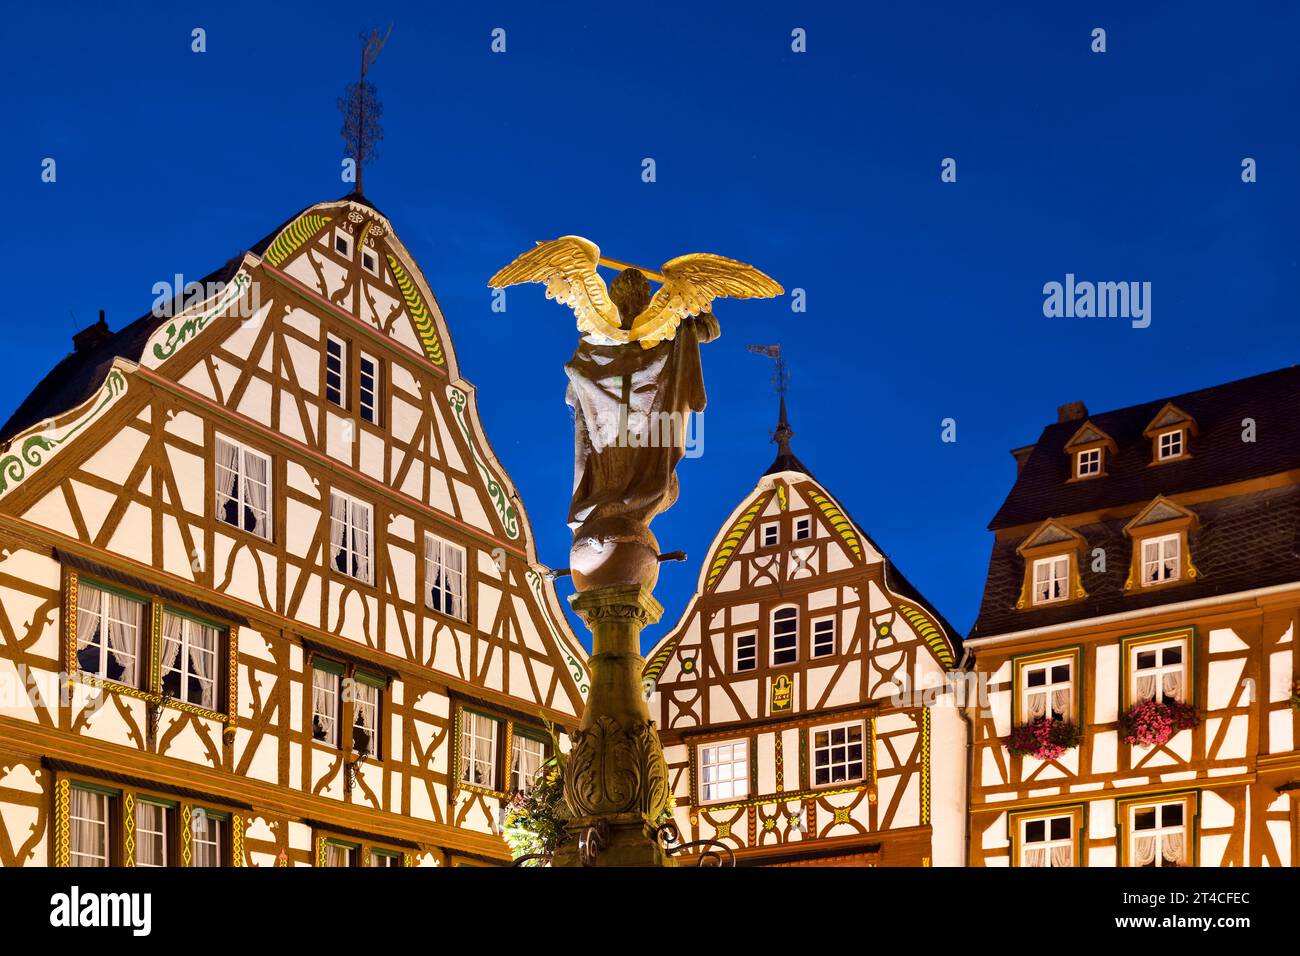 Maisons à colombages à pignons avec St. Fontaine de Michel sur la place du marché médiéval le soir, Allemagne, Rhénanie-Palatinat, Bernkastel-Kues Banque D'Images